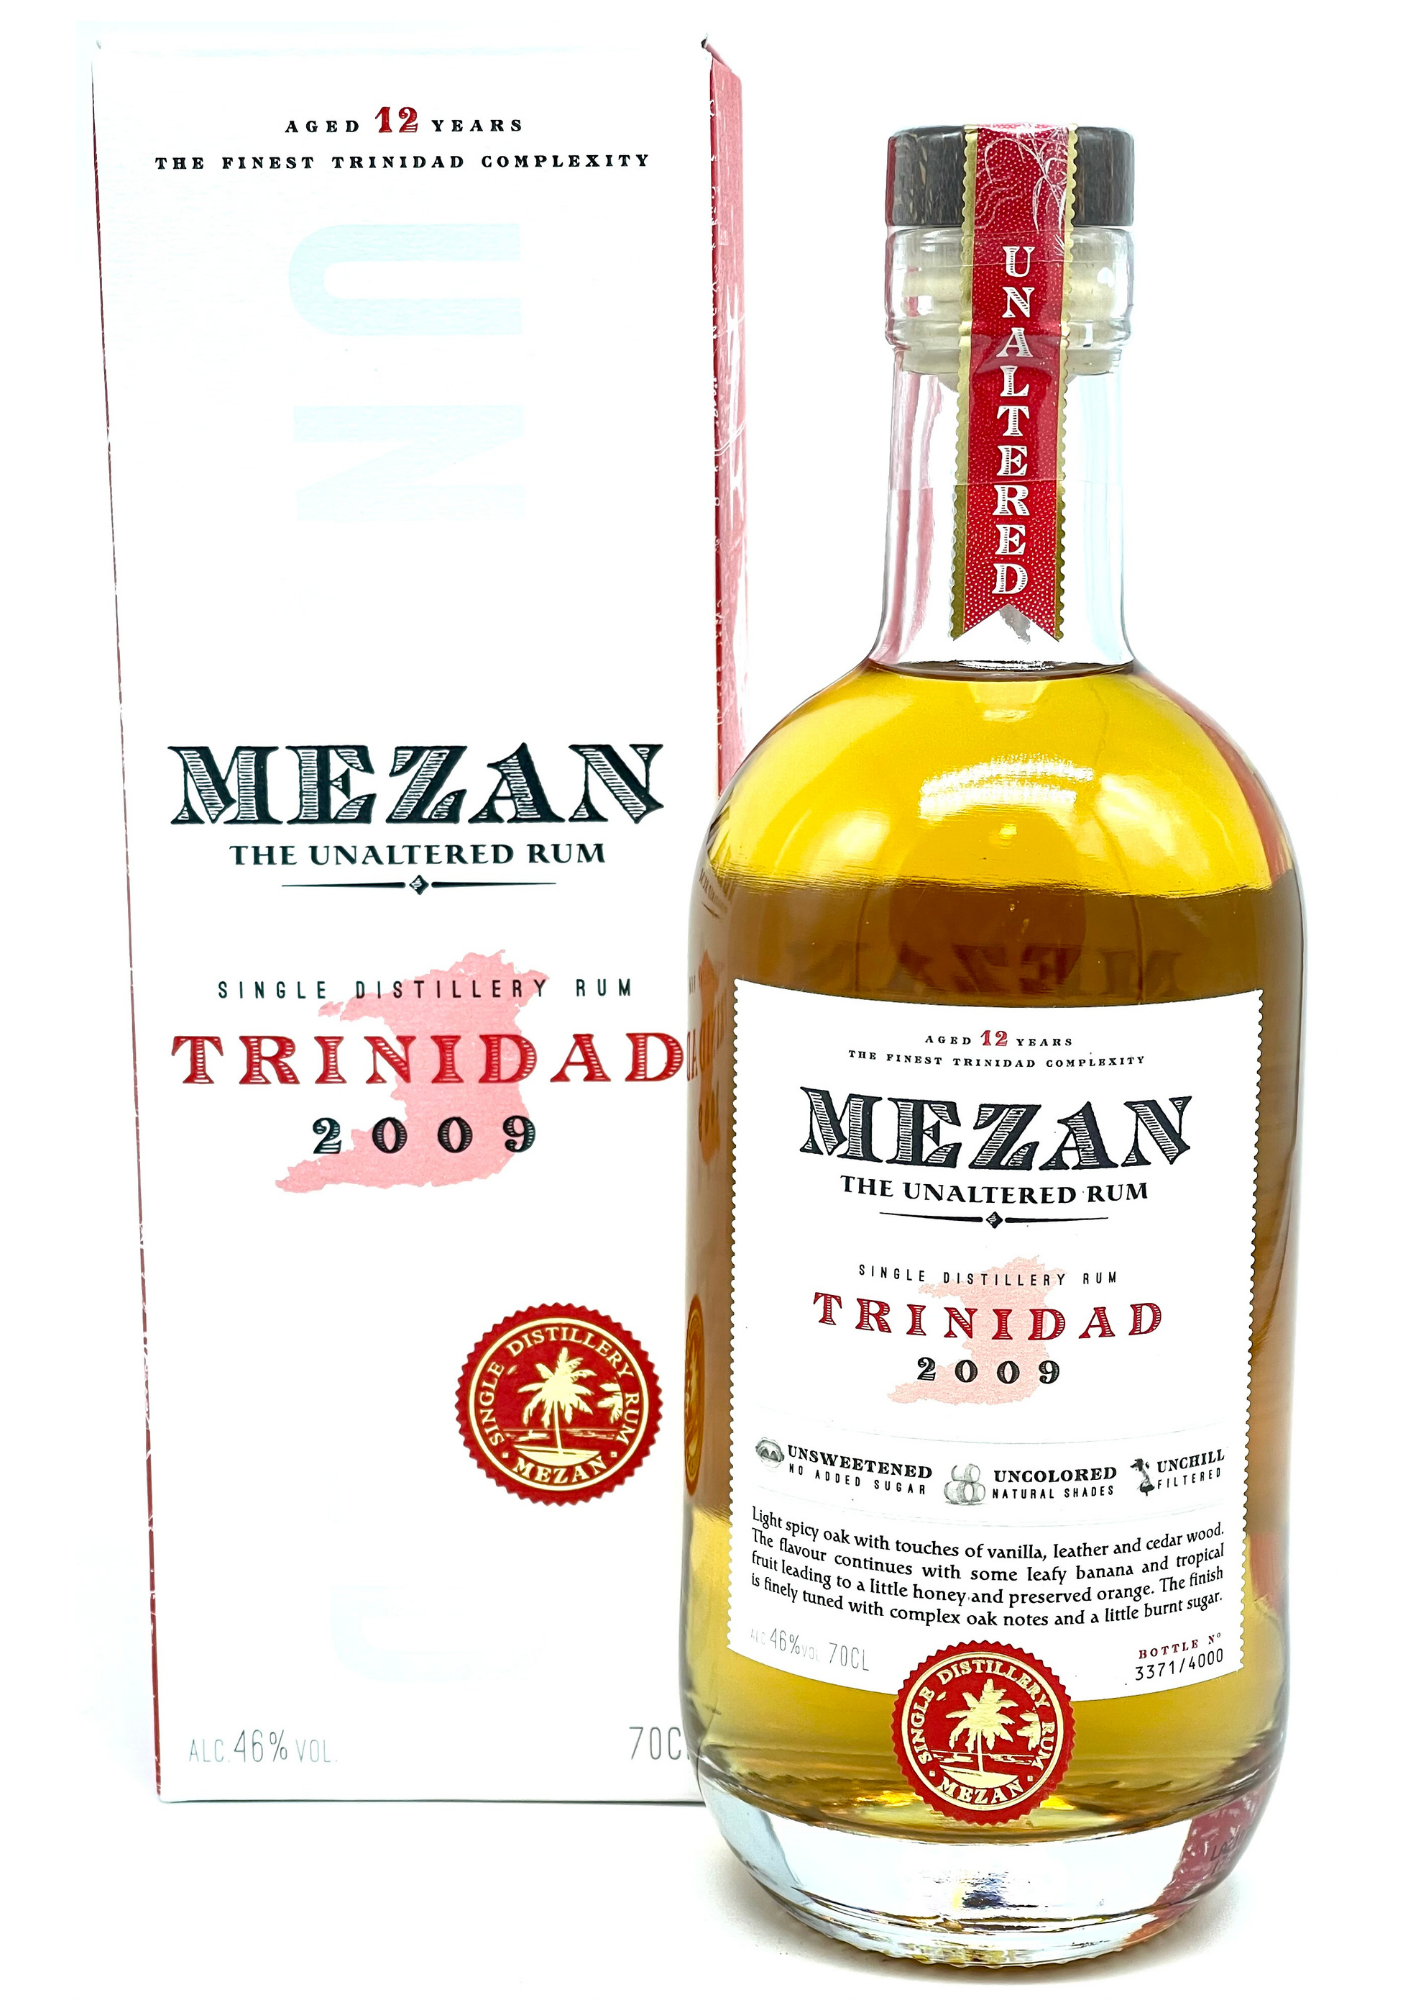 MEZAN Trinidad 2009 46%